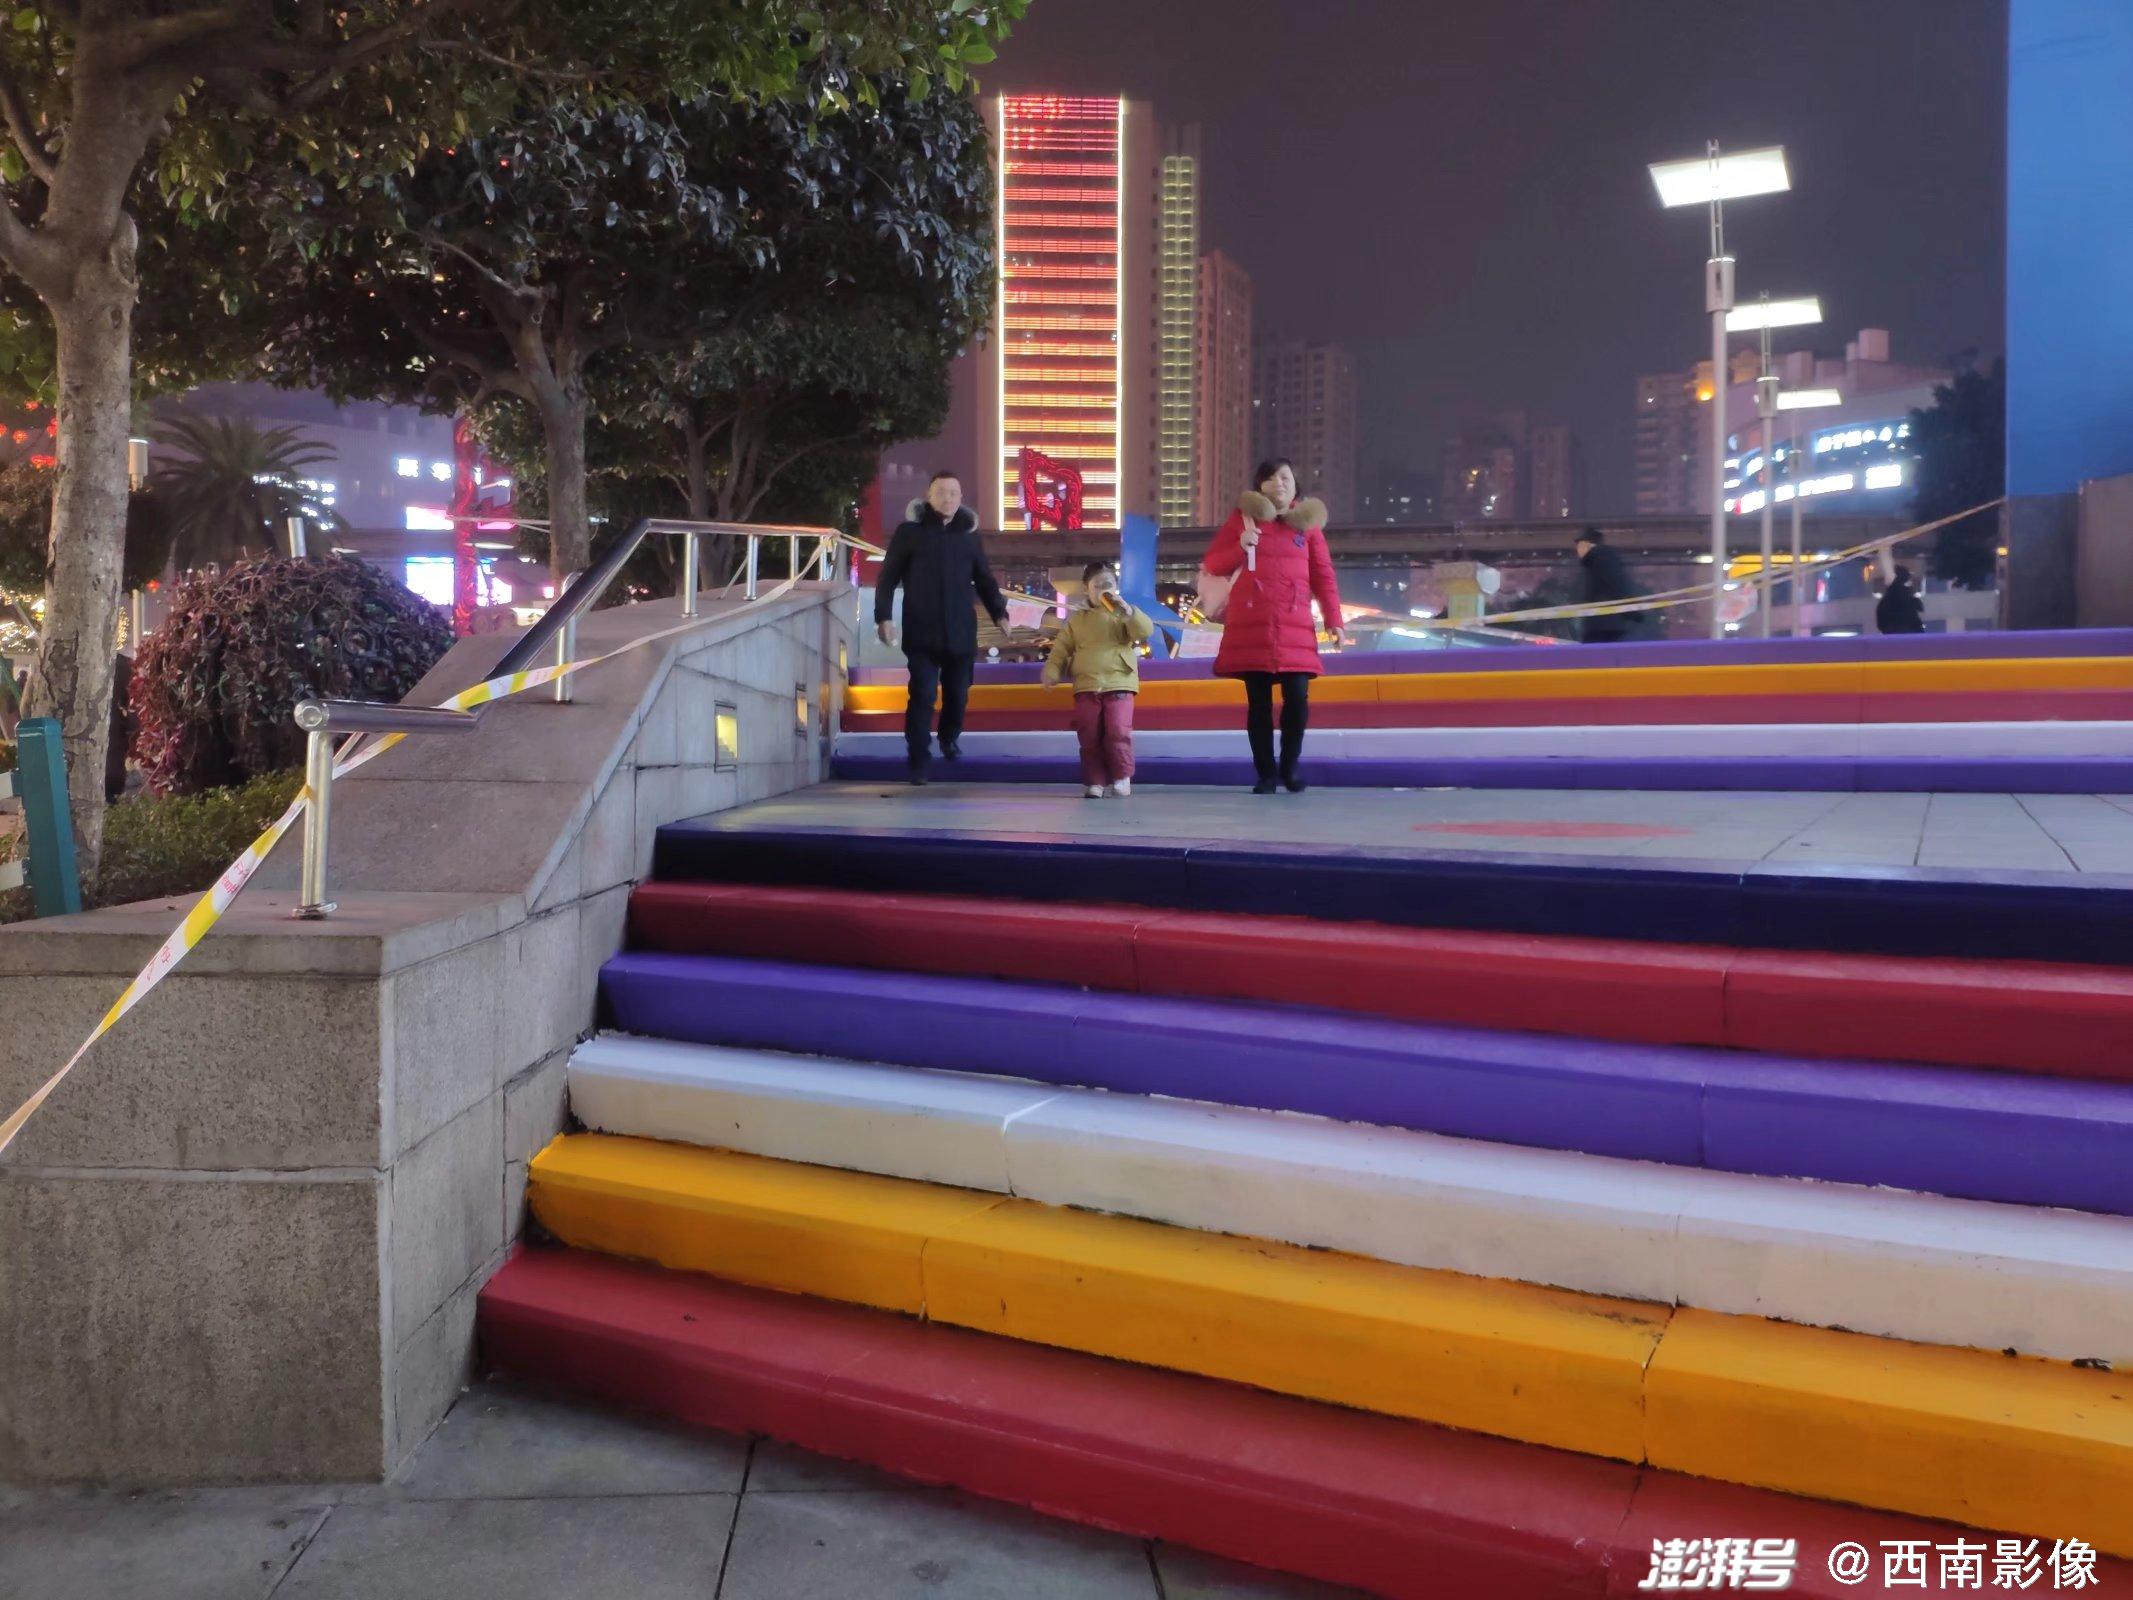 重庆街头现彩色台阶犹如彩虹降落大地雨天可防滑